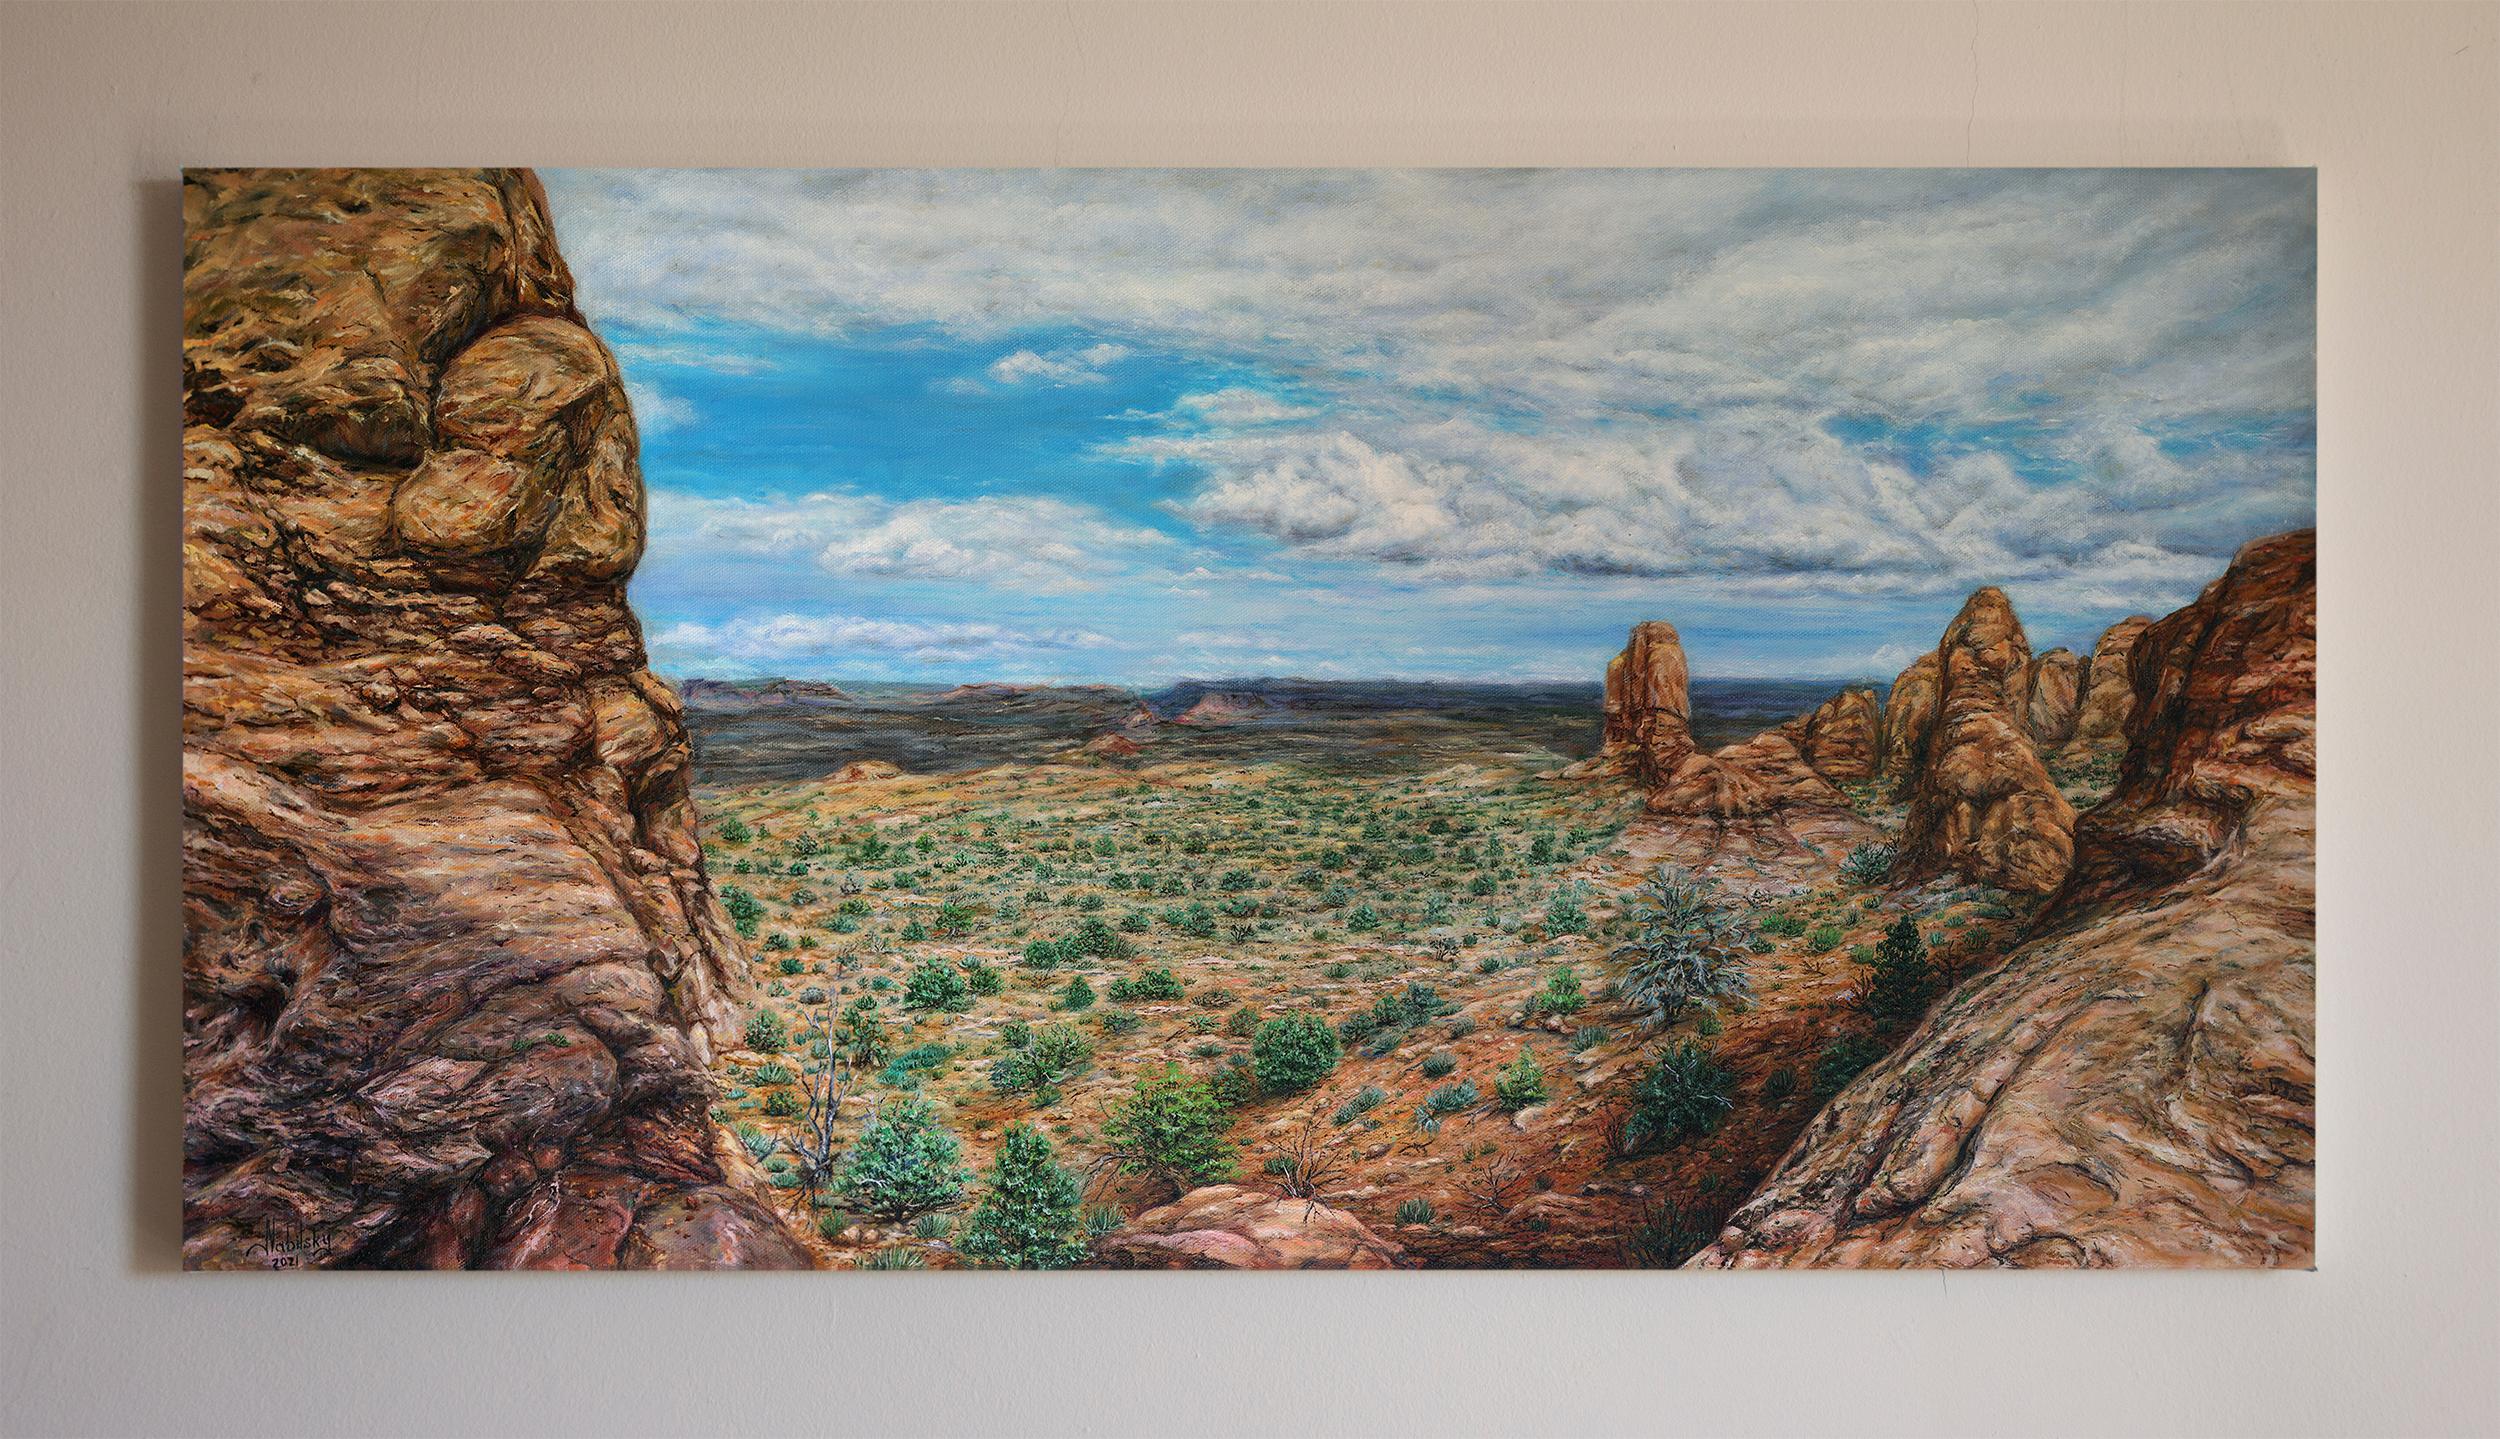 <p>Kommentare der KünstlerinDie Künstlerin Olena Nabilsky lässt sich von der Weite des offenen Raums inspirieren, um eine atemberaubende Darstellung eines felsigen Tals in Arizona zu schaffen.<br> Die Farben und scharfen Details der natürlichen